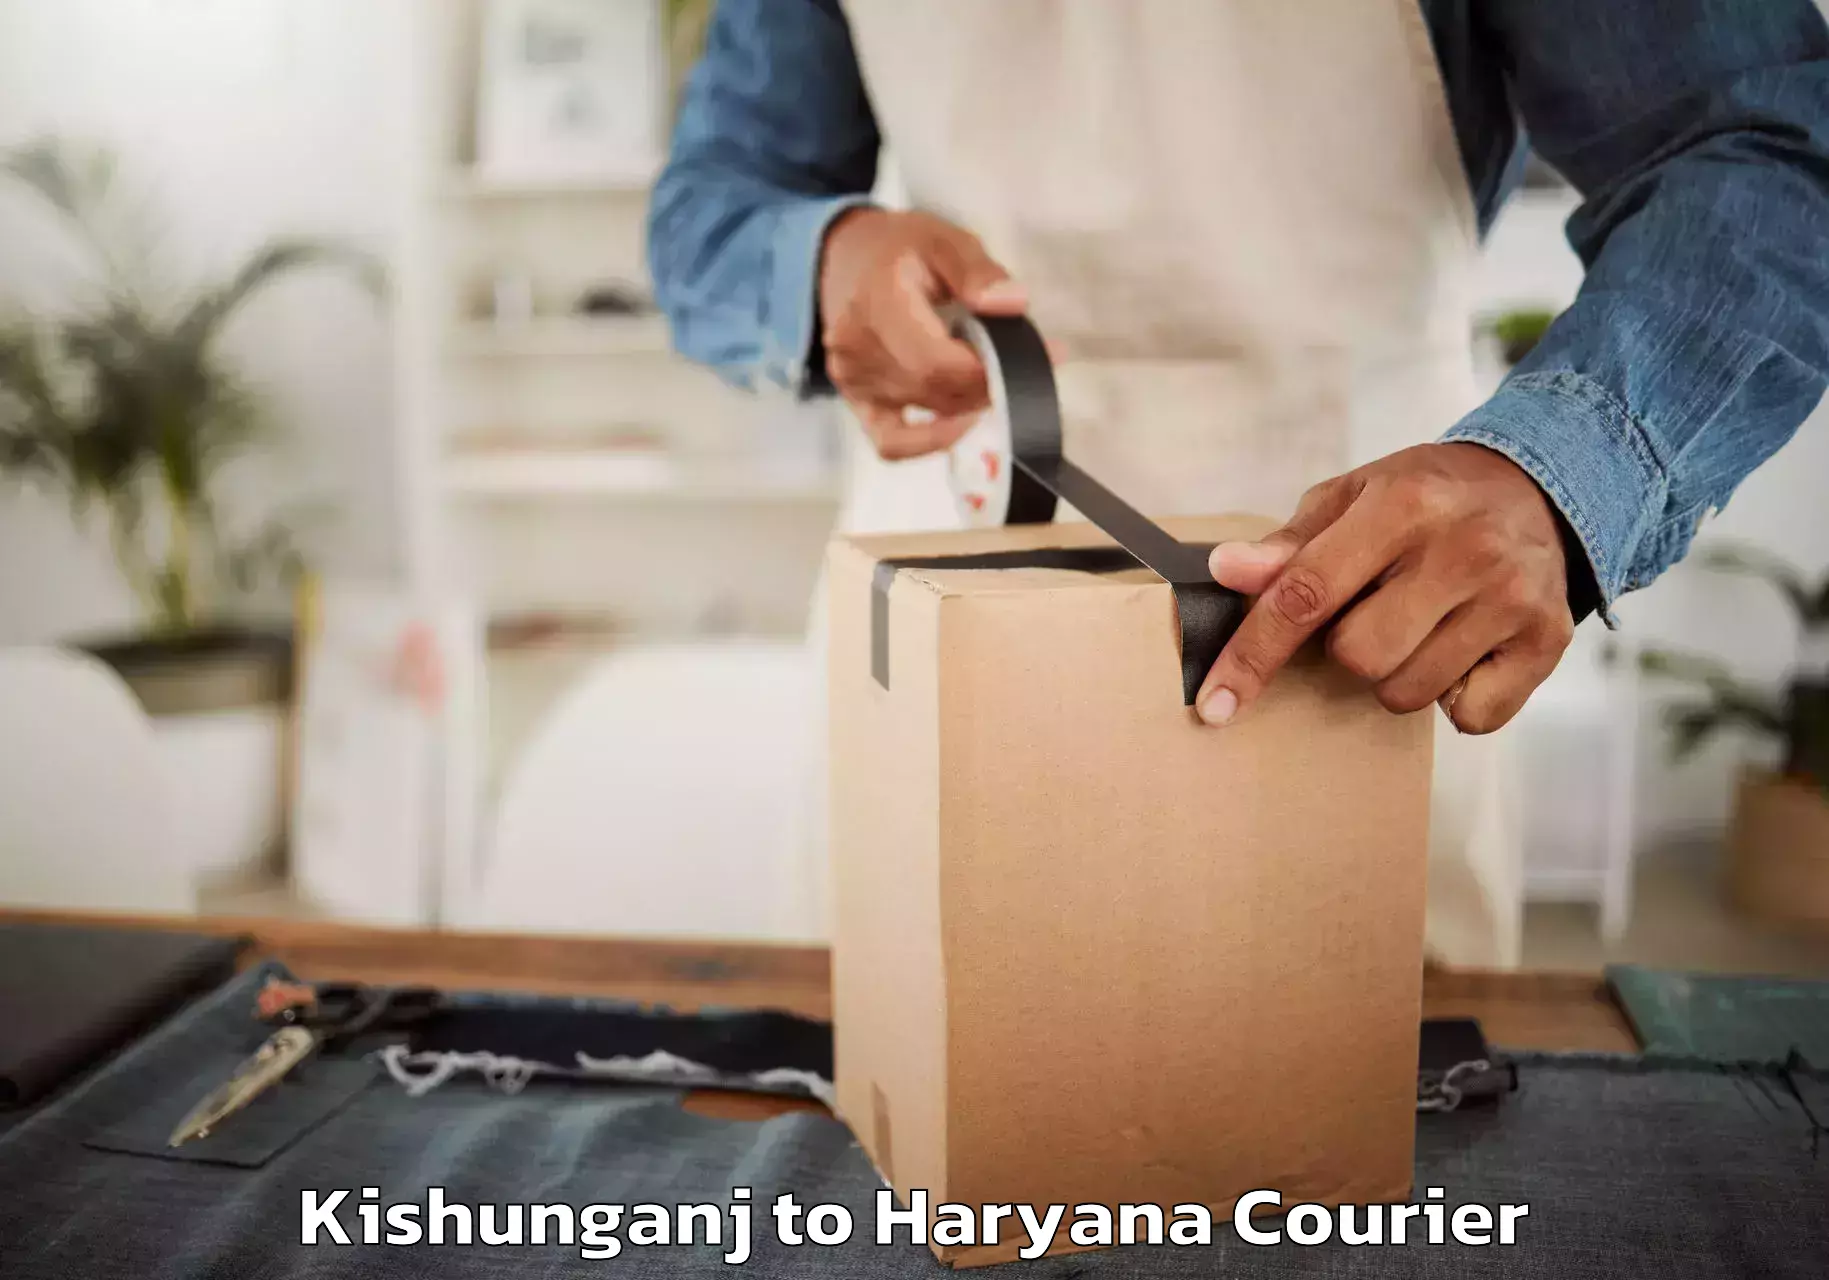 Furniture relocation experts Kishunganj to Gurgaon